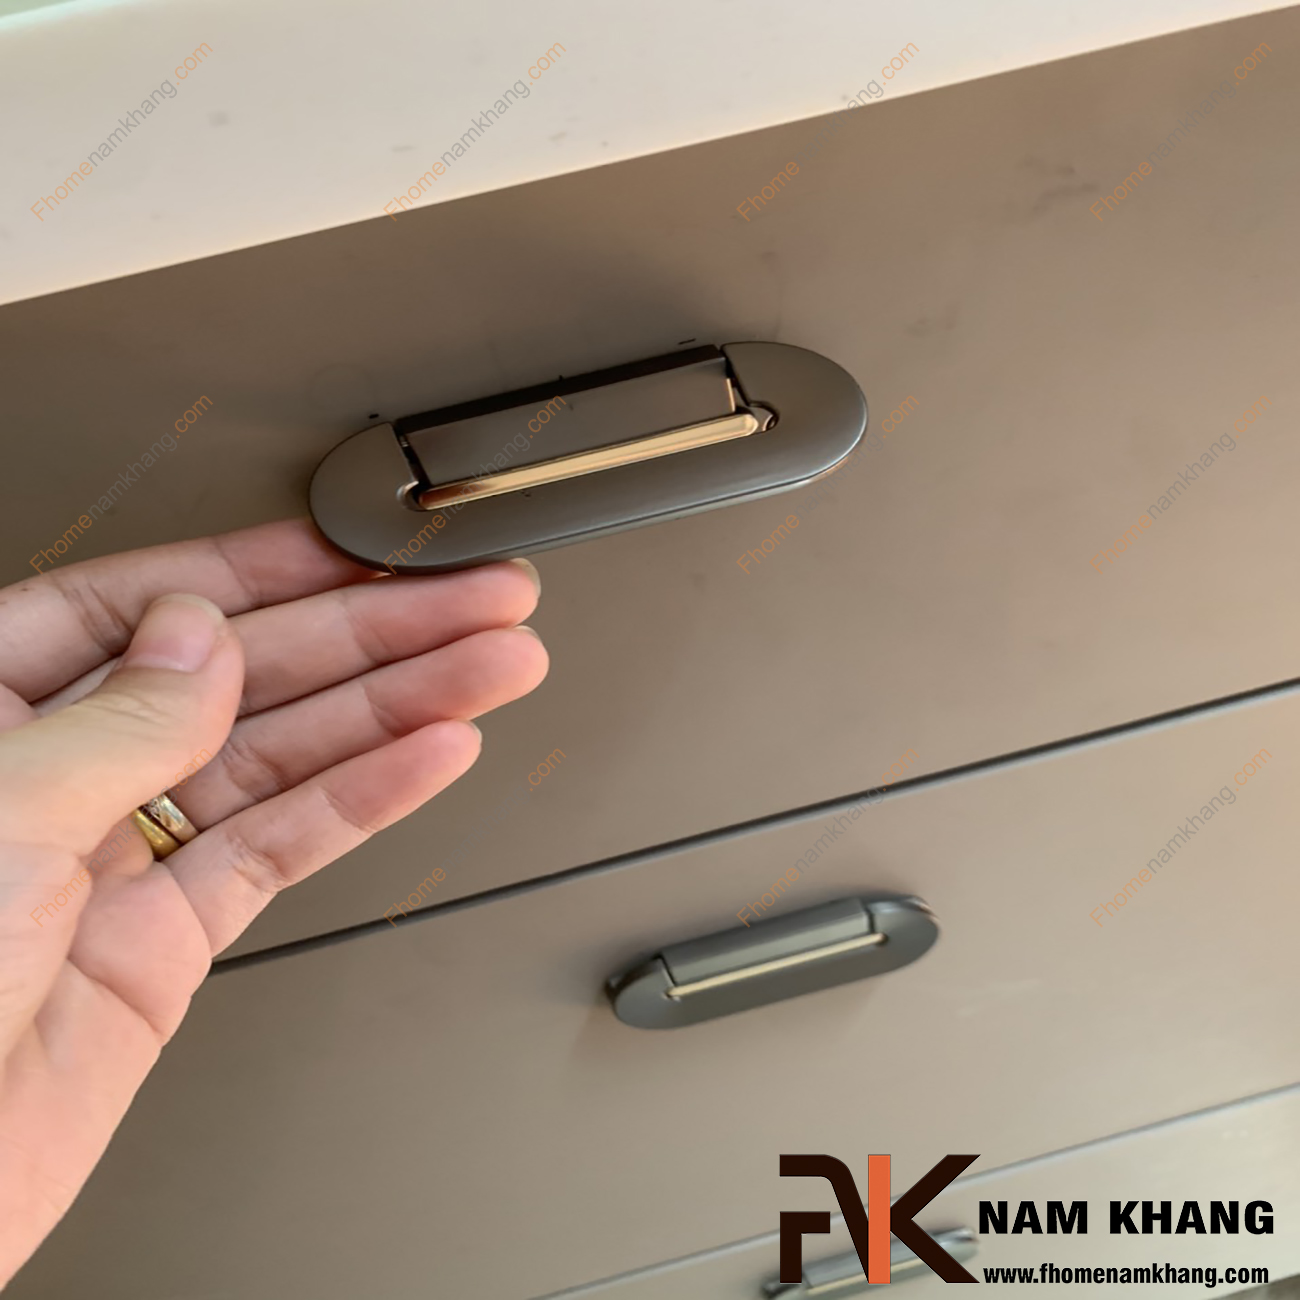 Tay nắm tủ hiện đại màu xám viền vàng NK381-64XV là một dạng tay nắm tủ thiết kế rất tinh tế và hiện đại. Sản phẩm tay nắm gồm 2 phần rời nhau, phần đế được cố định bởi 2 vít vặn và phần thân nắm có thể đóng gập dễ dàng.